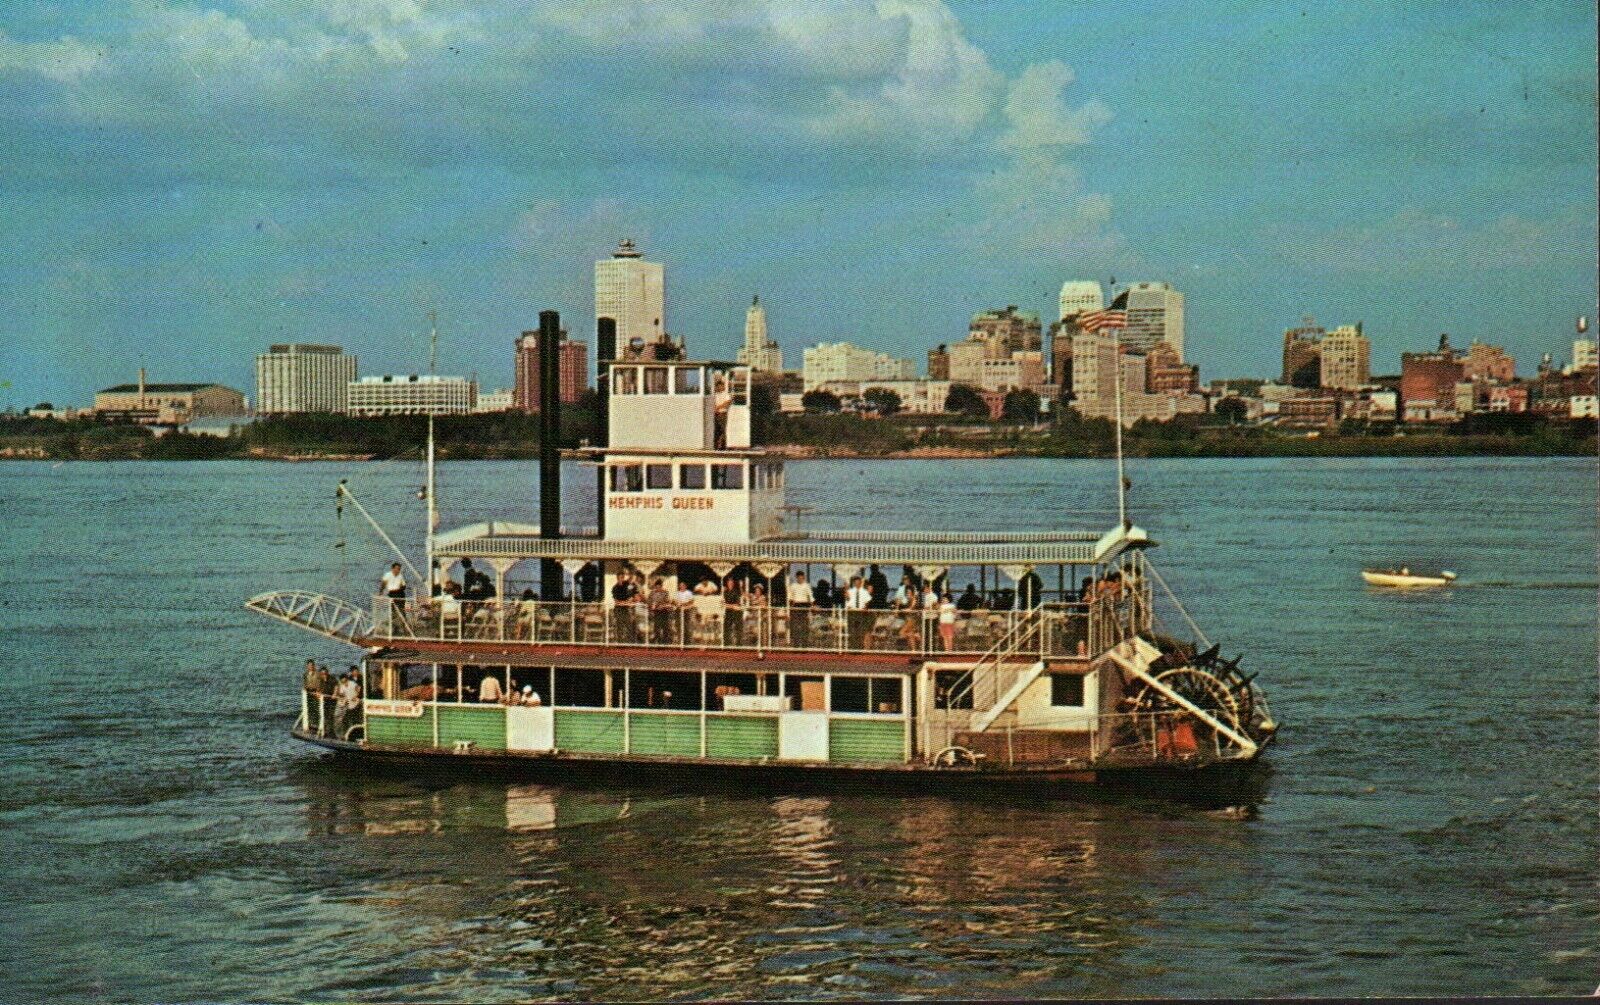  Memphis Queen II Showboat Mississippi River Riverboat Vintage Chrome Postcard